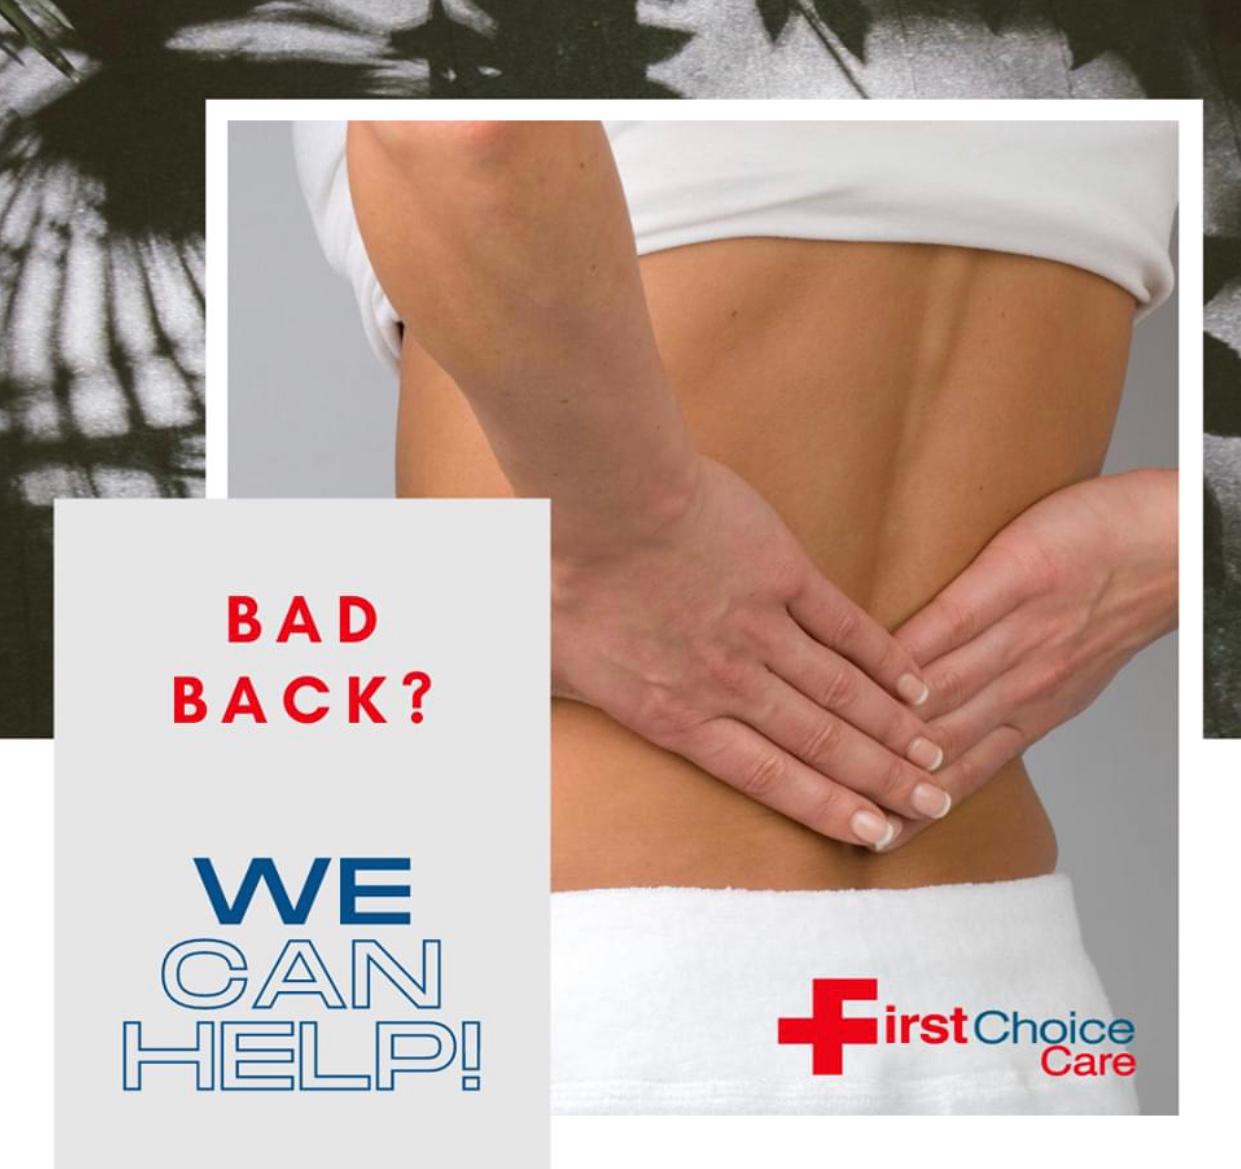 We treat back pain.